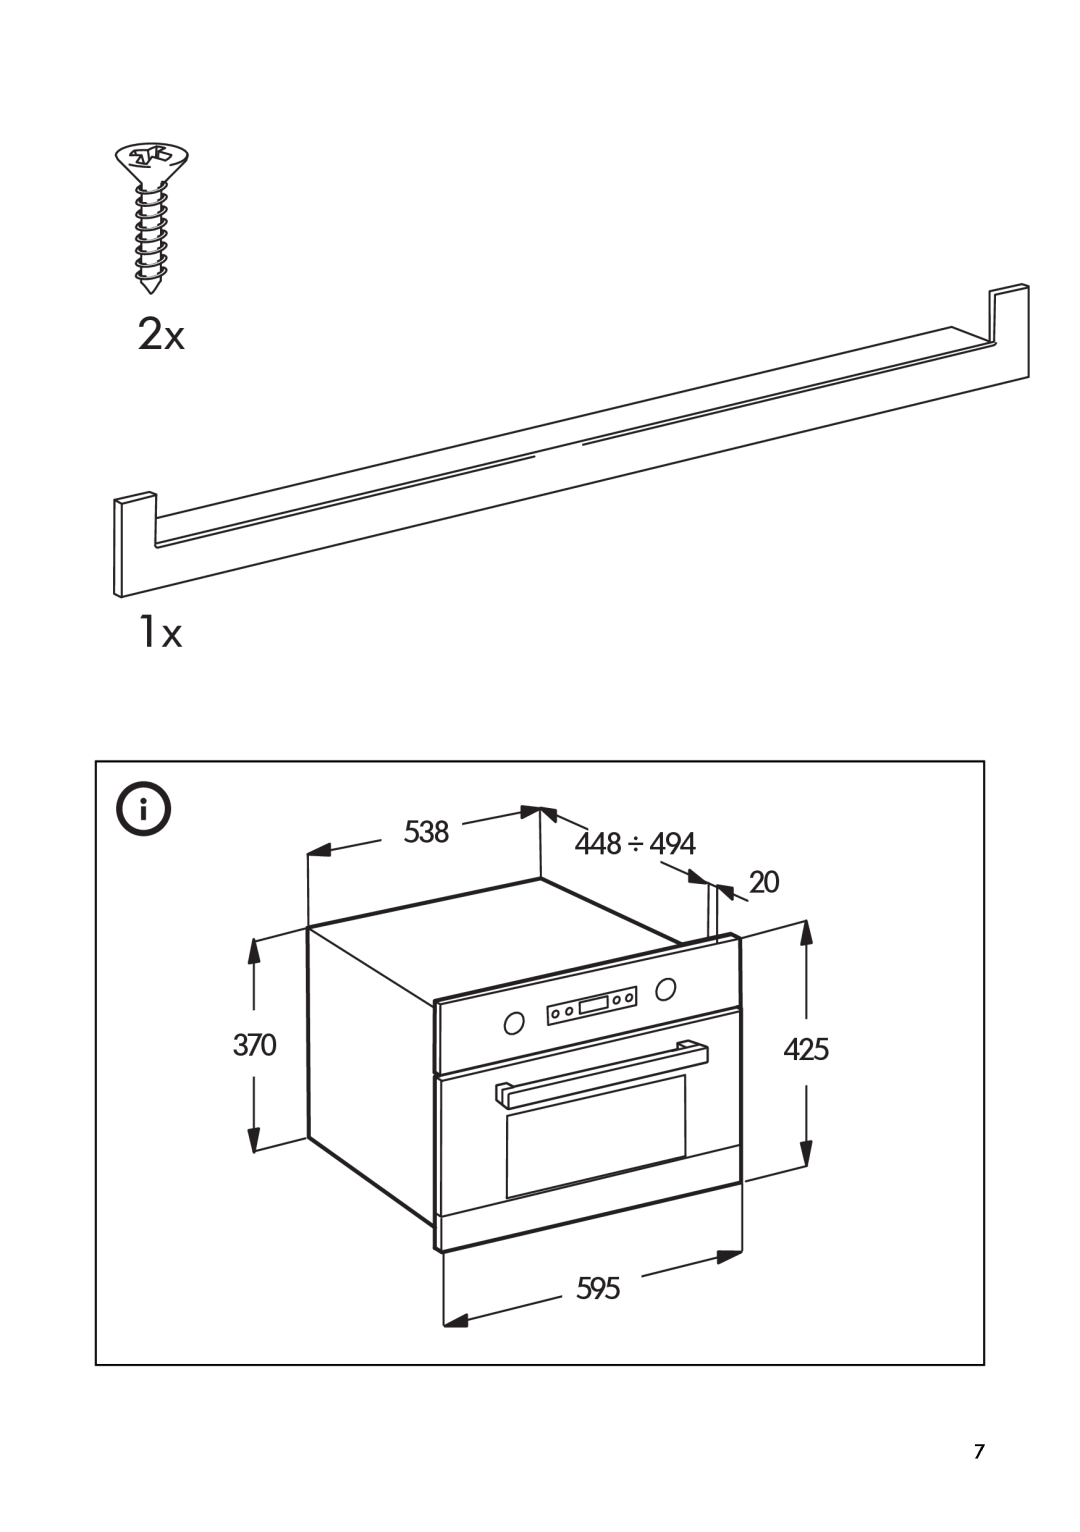 IKEA MW6 manual 2x, 448 ÷ 